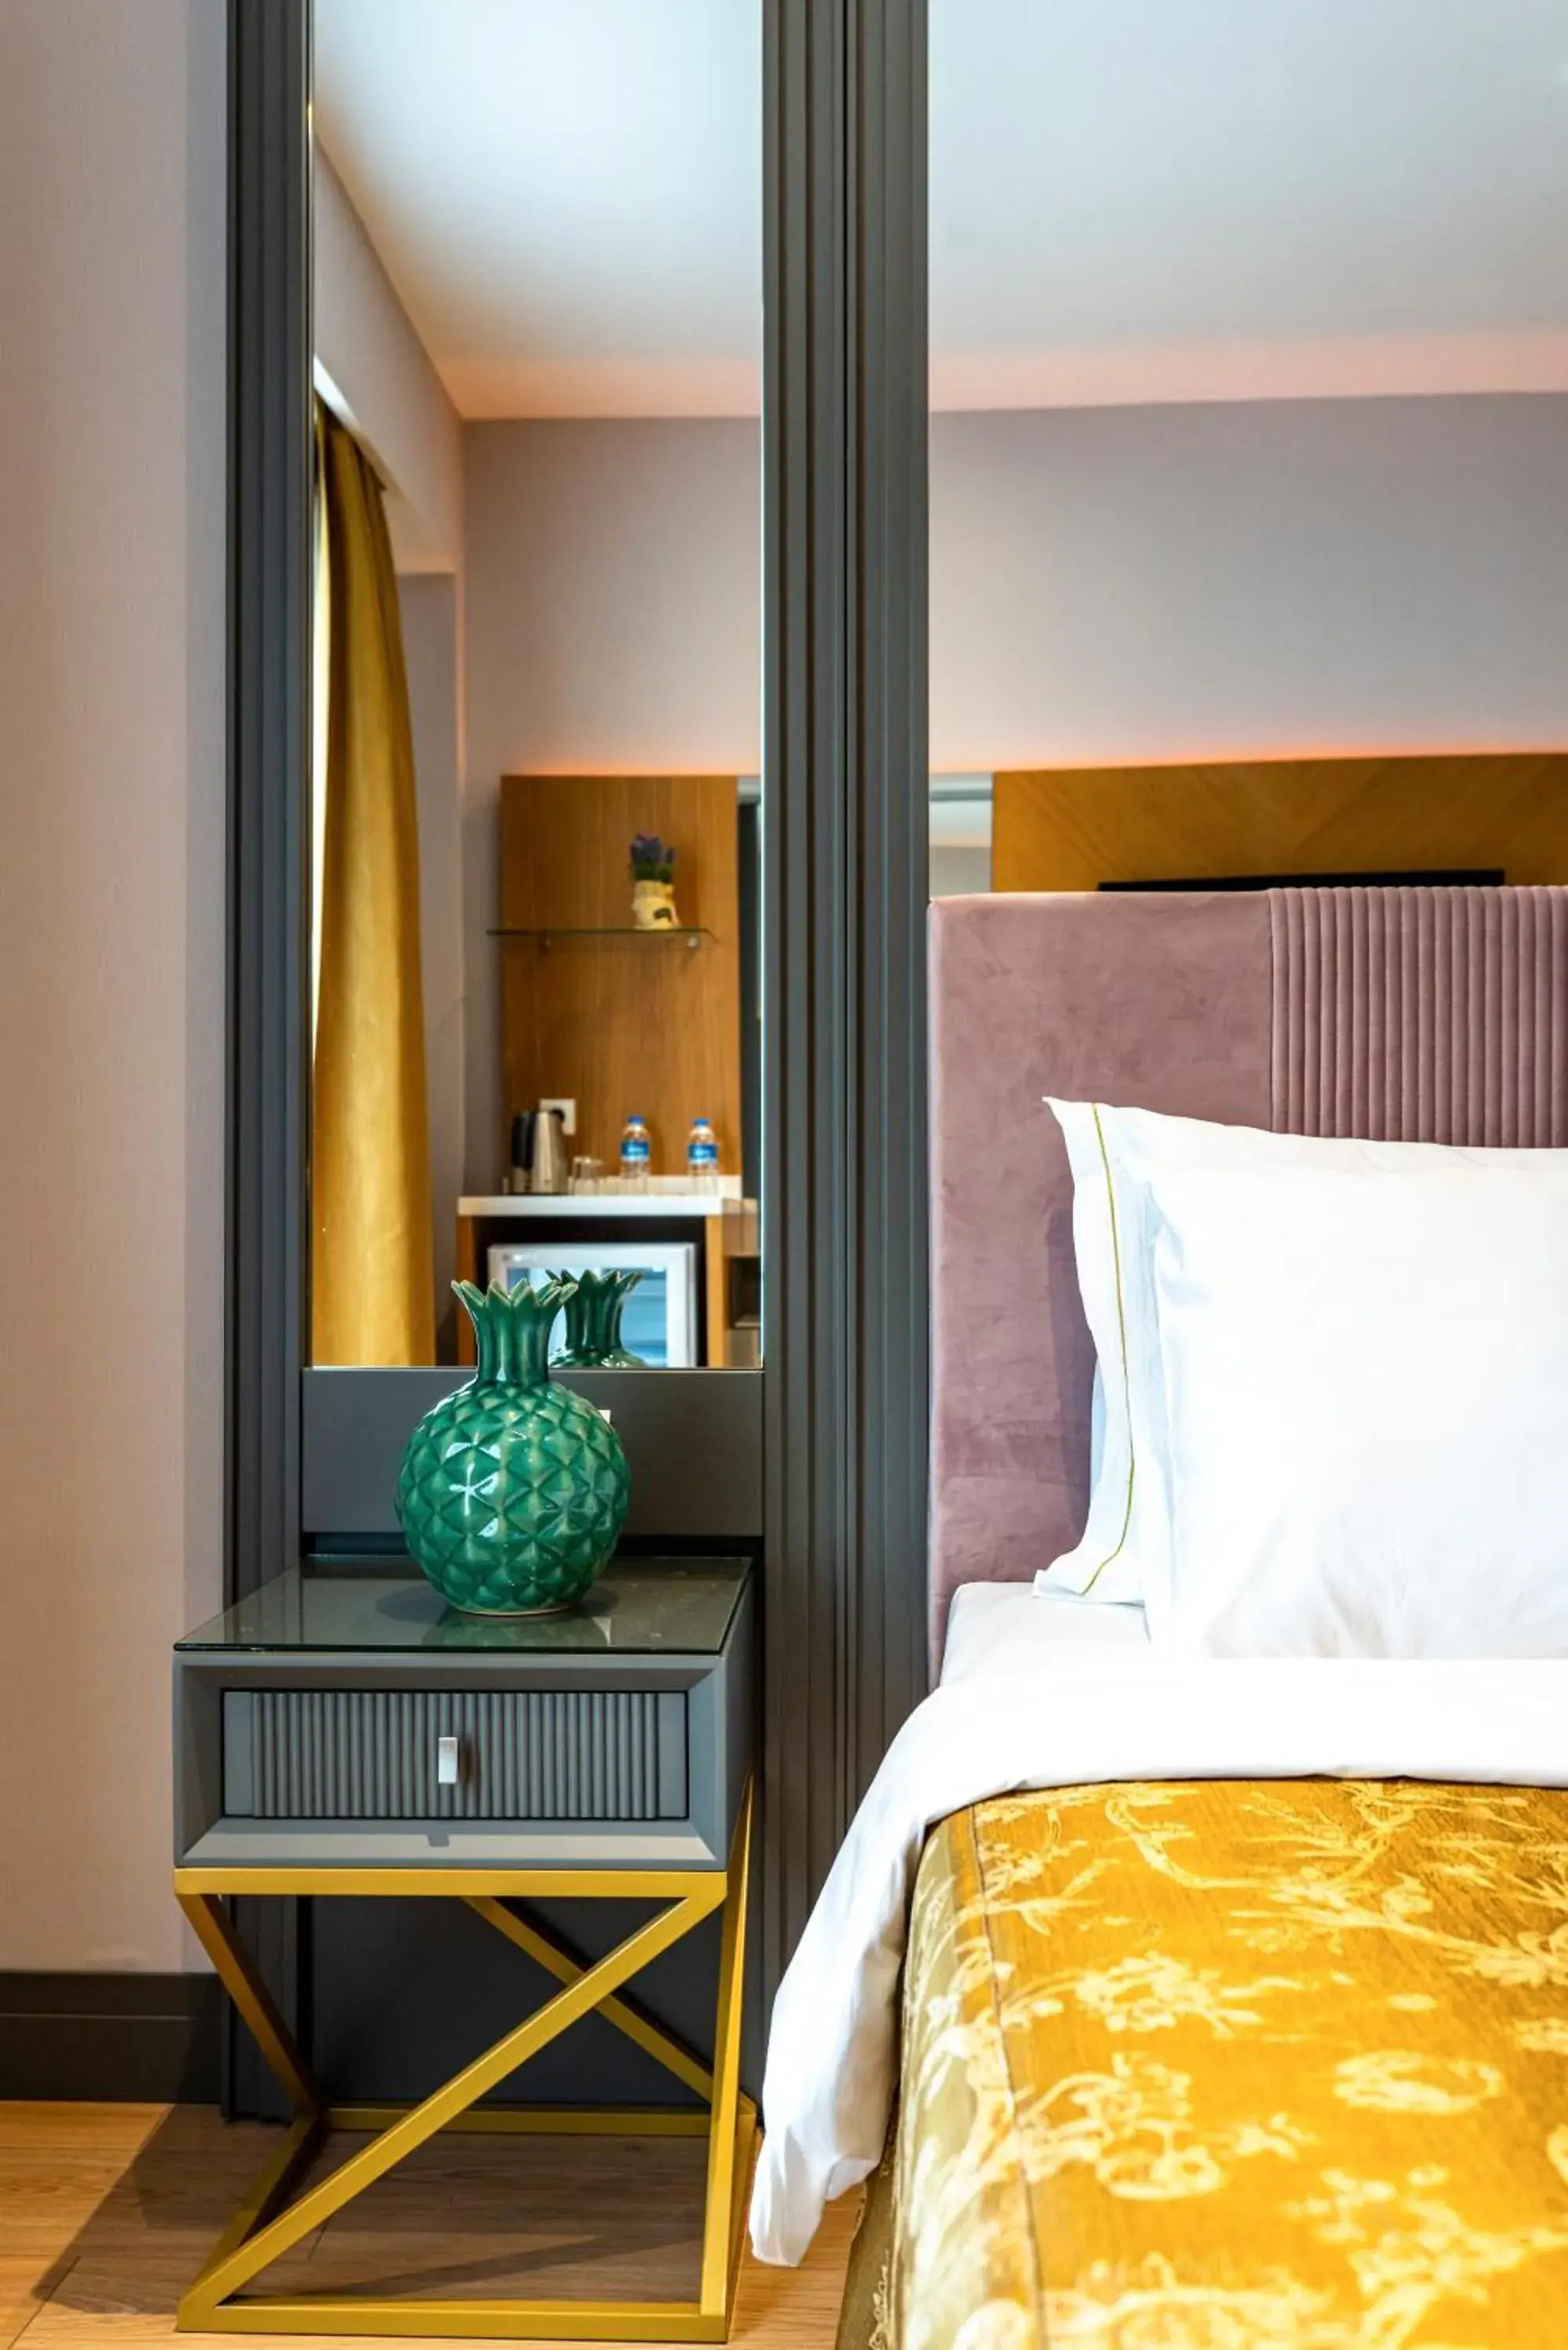 Bed in Oran Hotel